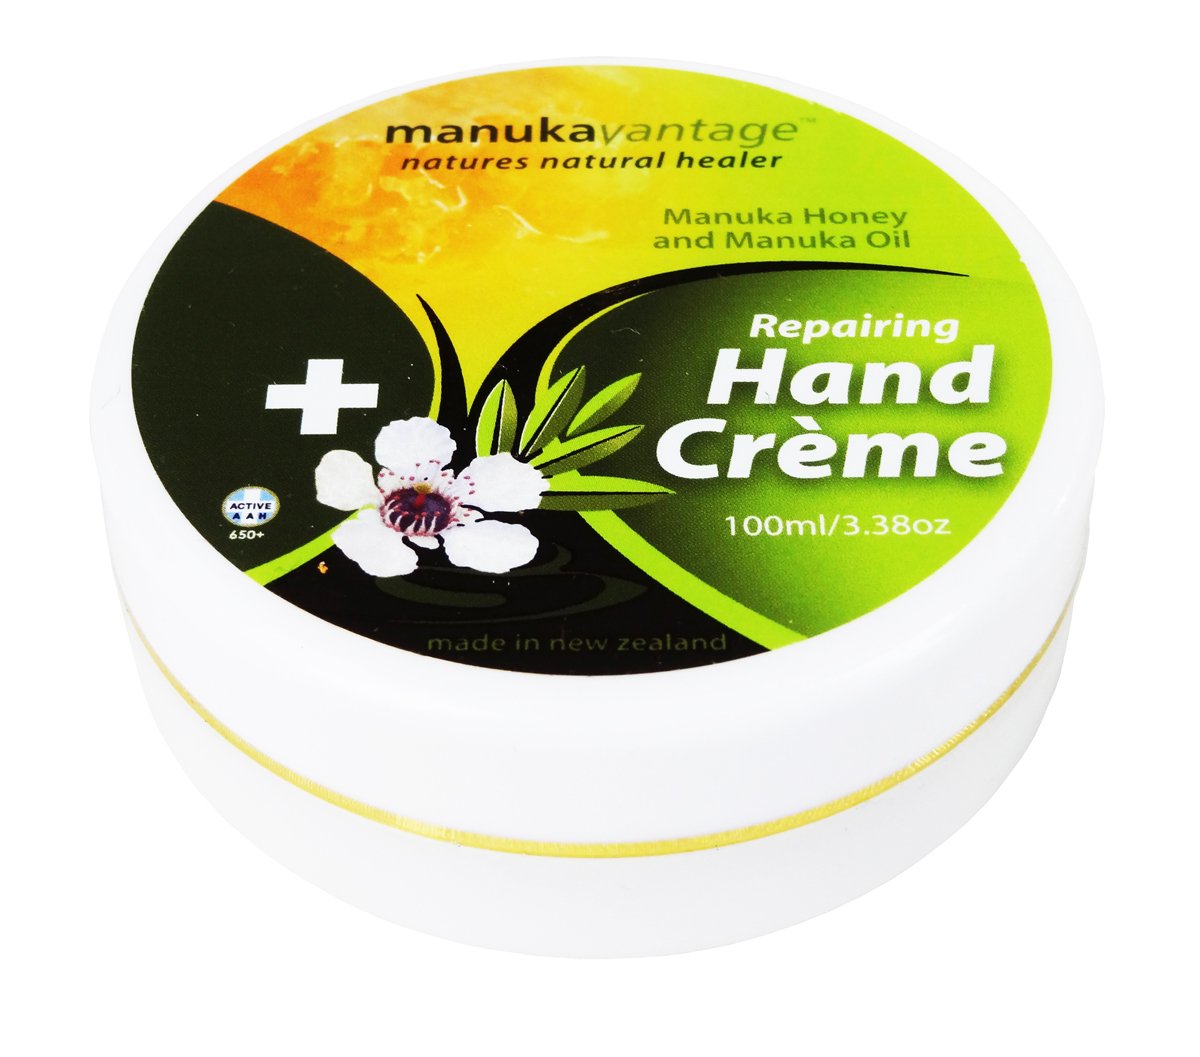 Manukavantage Manuka Honey and Manuka Oil Repairing Hand Creme 100g